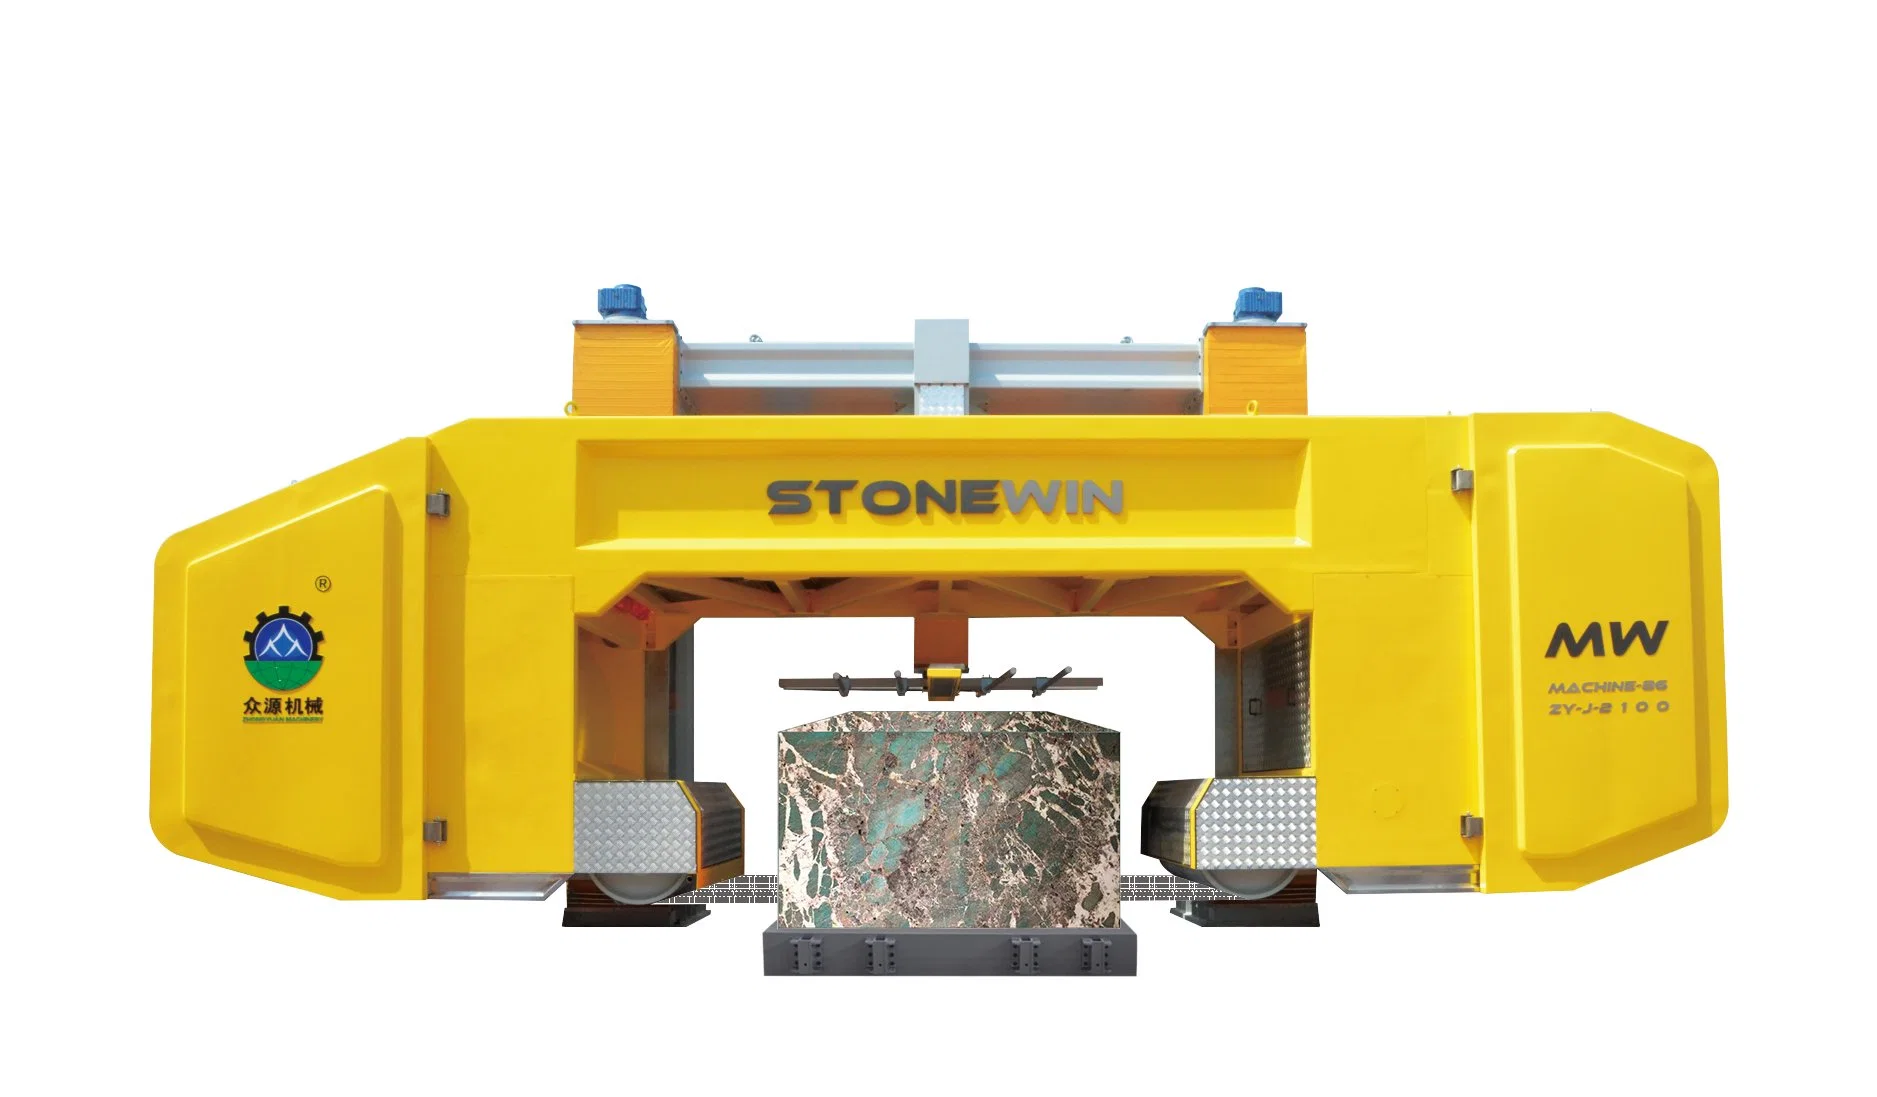 Zhongyuan Stonewin Block 58 Diamond Multi-Wire Saw Machine: Redefining Stone Cutting Standards